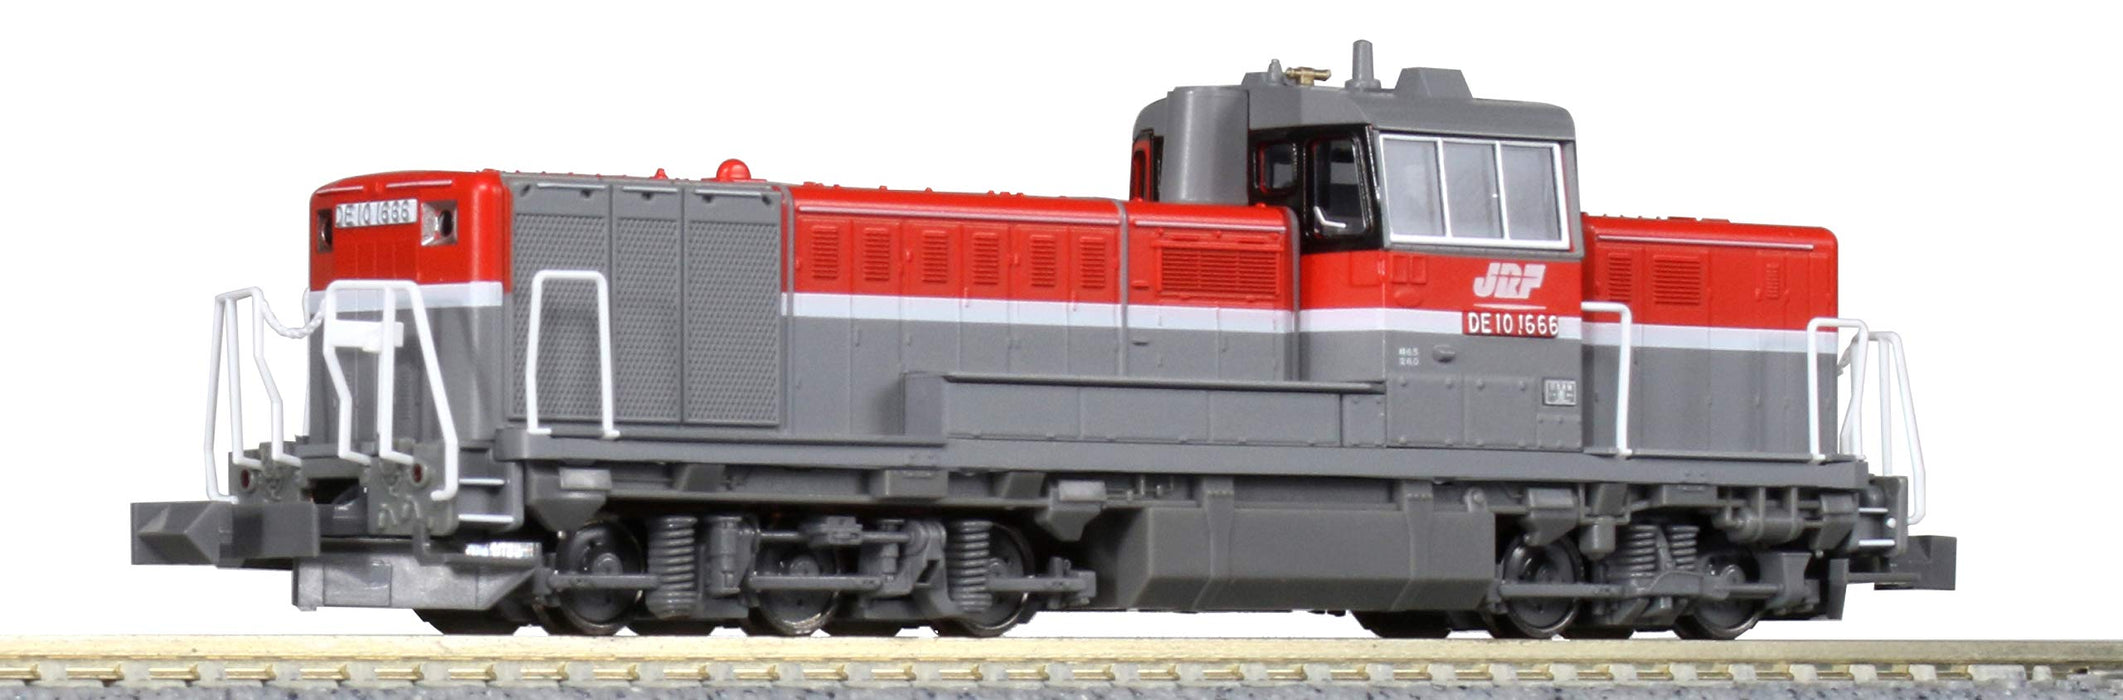 Kato N Gauge DE10 Diesel Locomotive JR Freight Updated Color Railway Model 7011-3